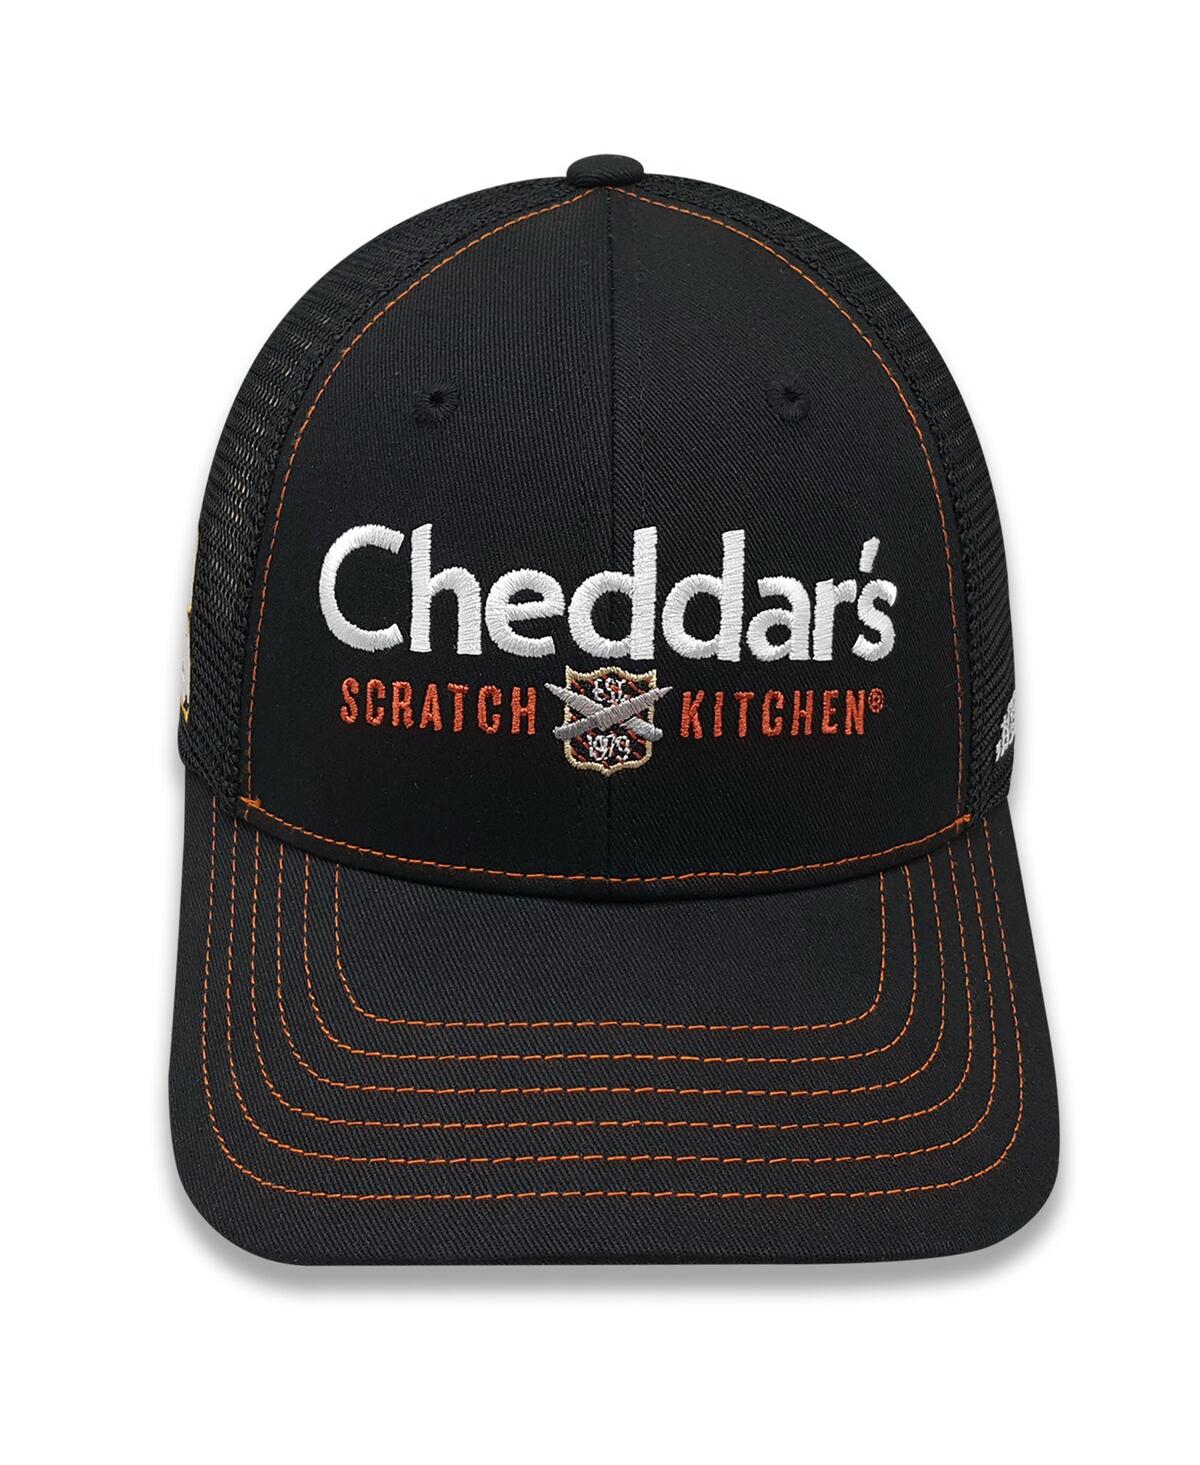 Checkered Flag Sports Men's  Black Kyle Busch Cheddar's Trucker Adjustable Hat